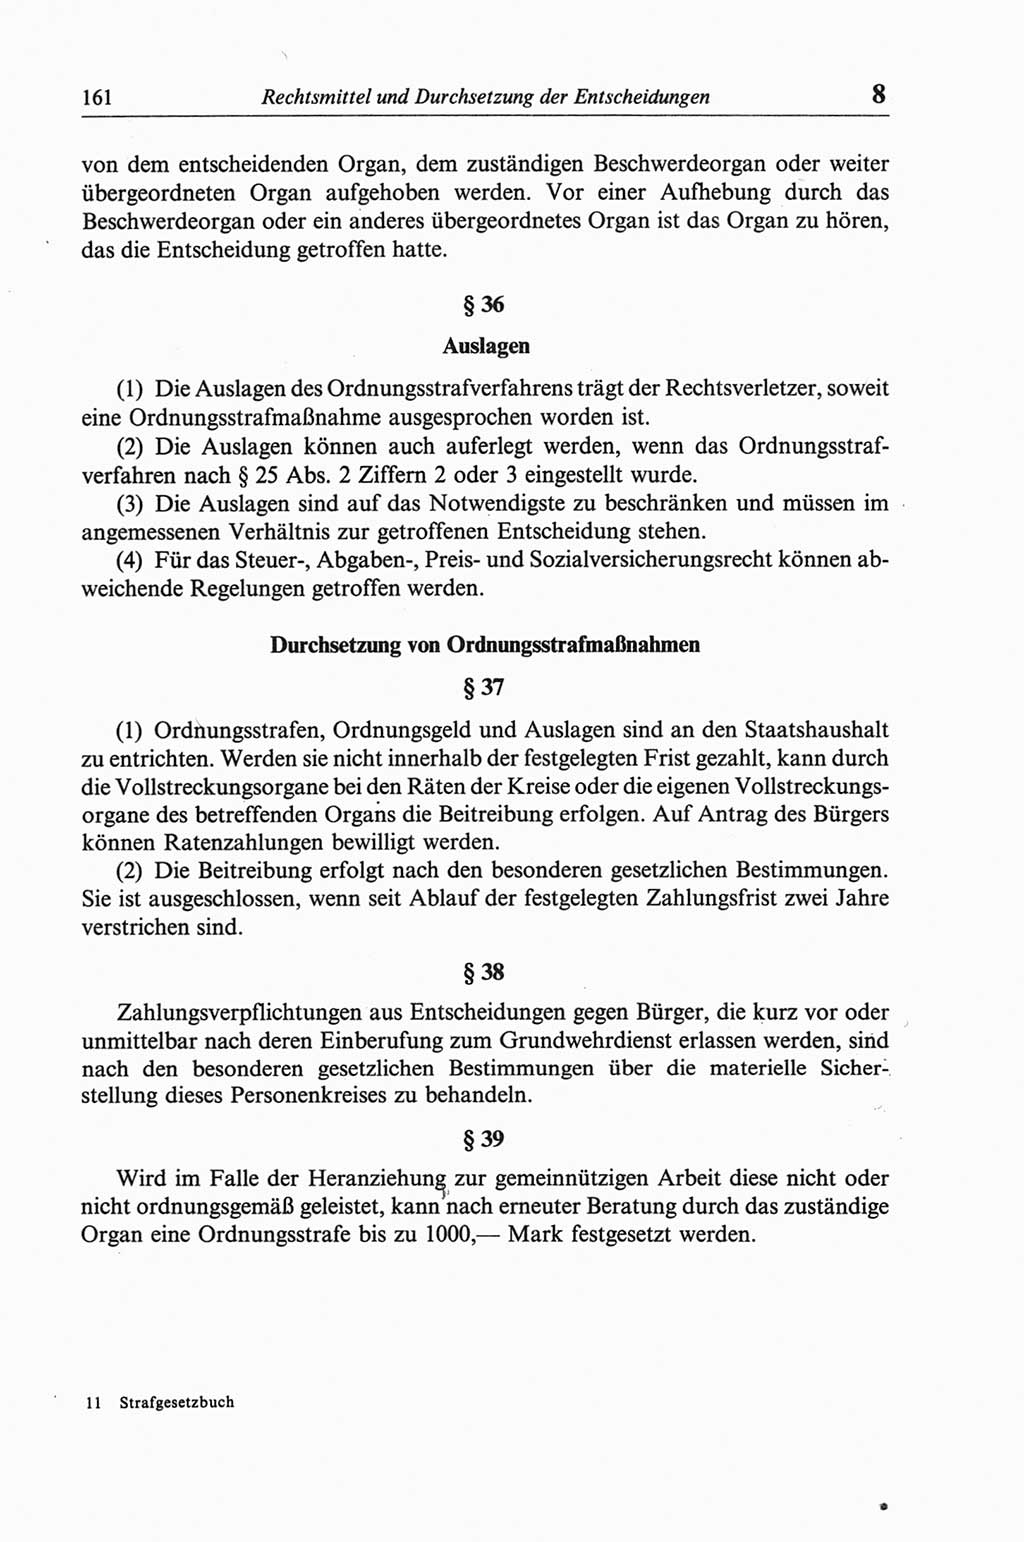 Strafgesetzbuch (StGB) der Deutschen Demokratischen Republik (DDR) und angrenzende Gesetze und Bestimmungen 1968, Seite 161 (StGB Ges. Best. DDR 1968, S. 161)